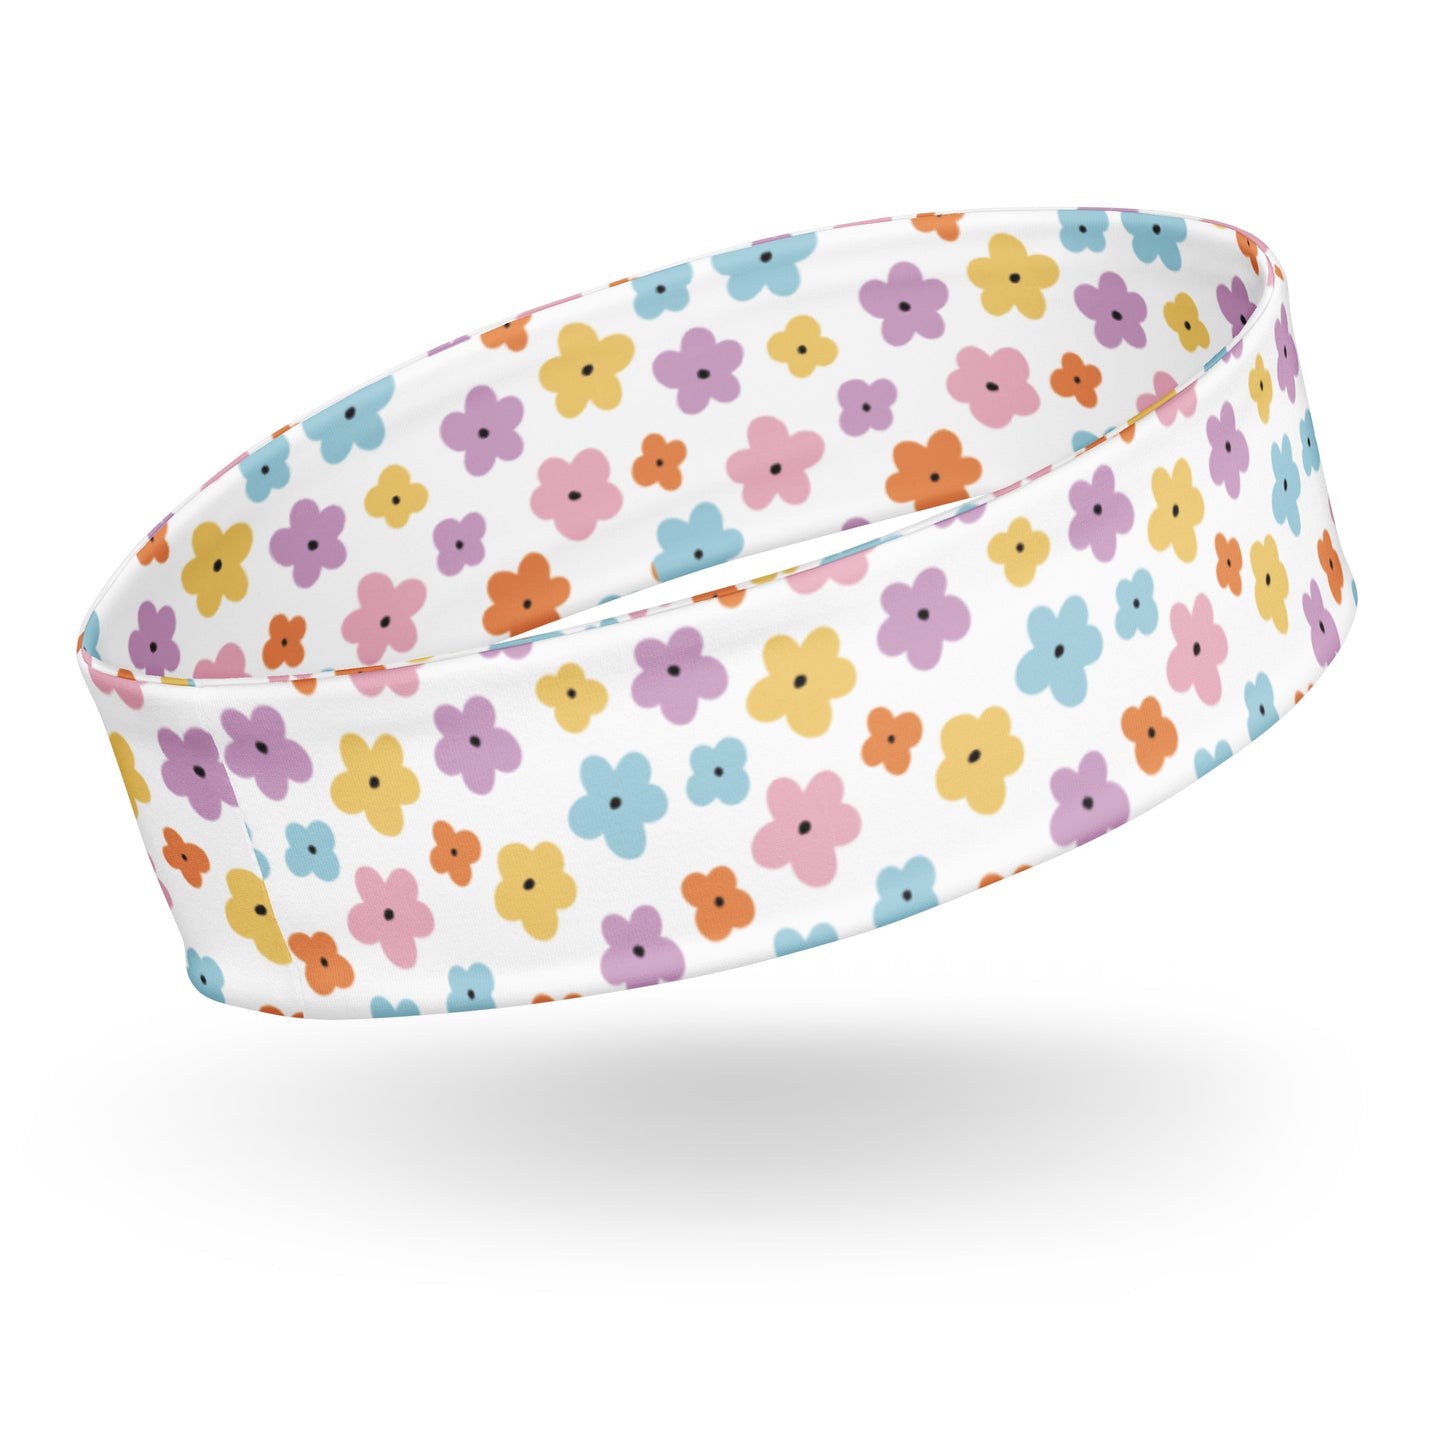 Flowers Headband